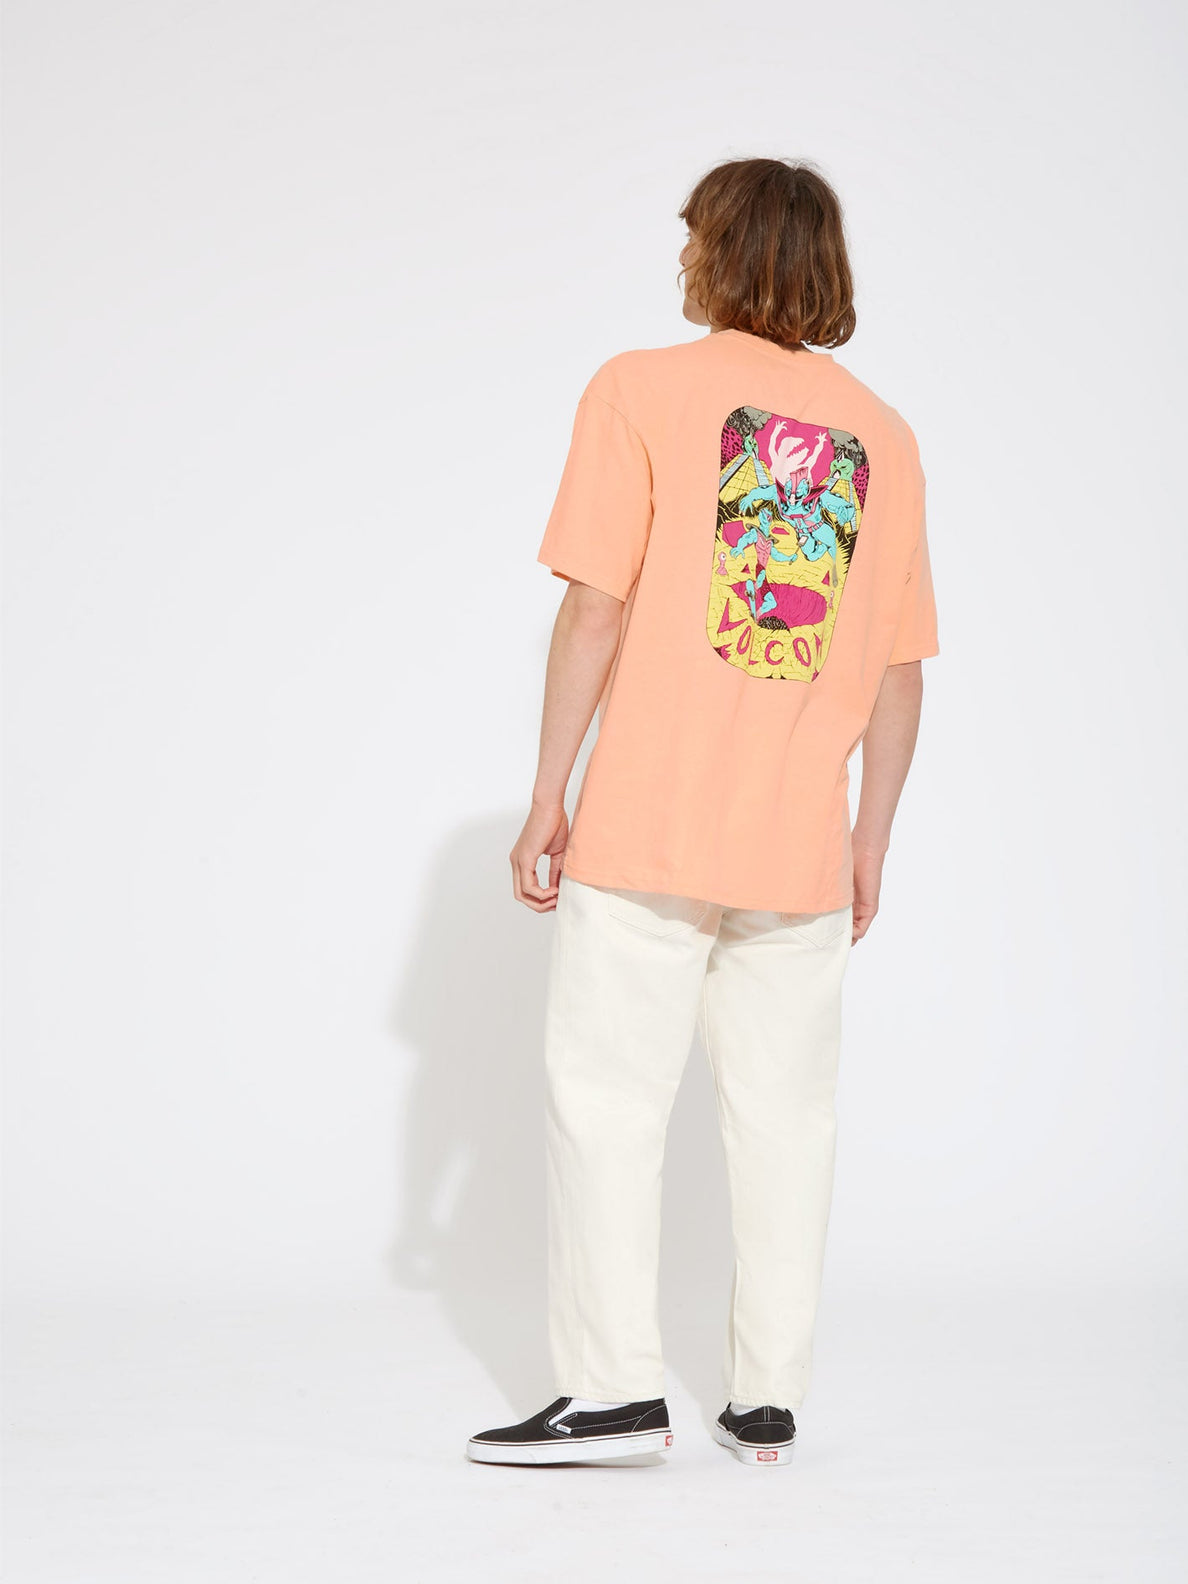 Camiseta Volcom Sanair ss - Peach Bud